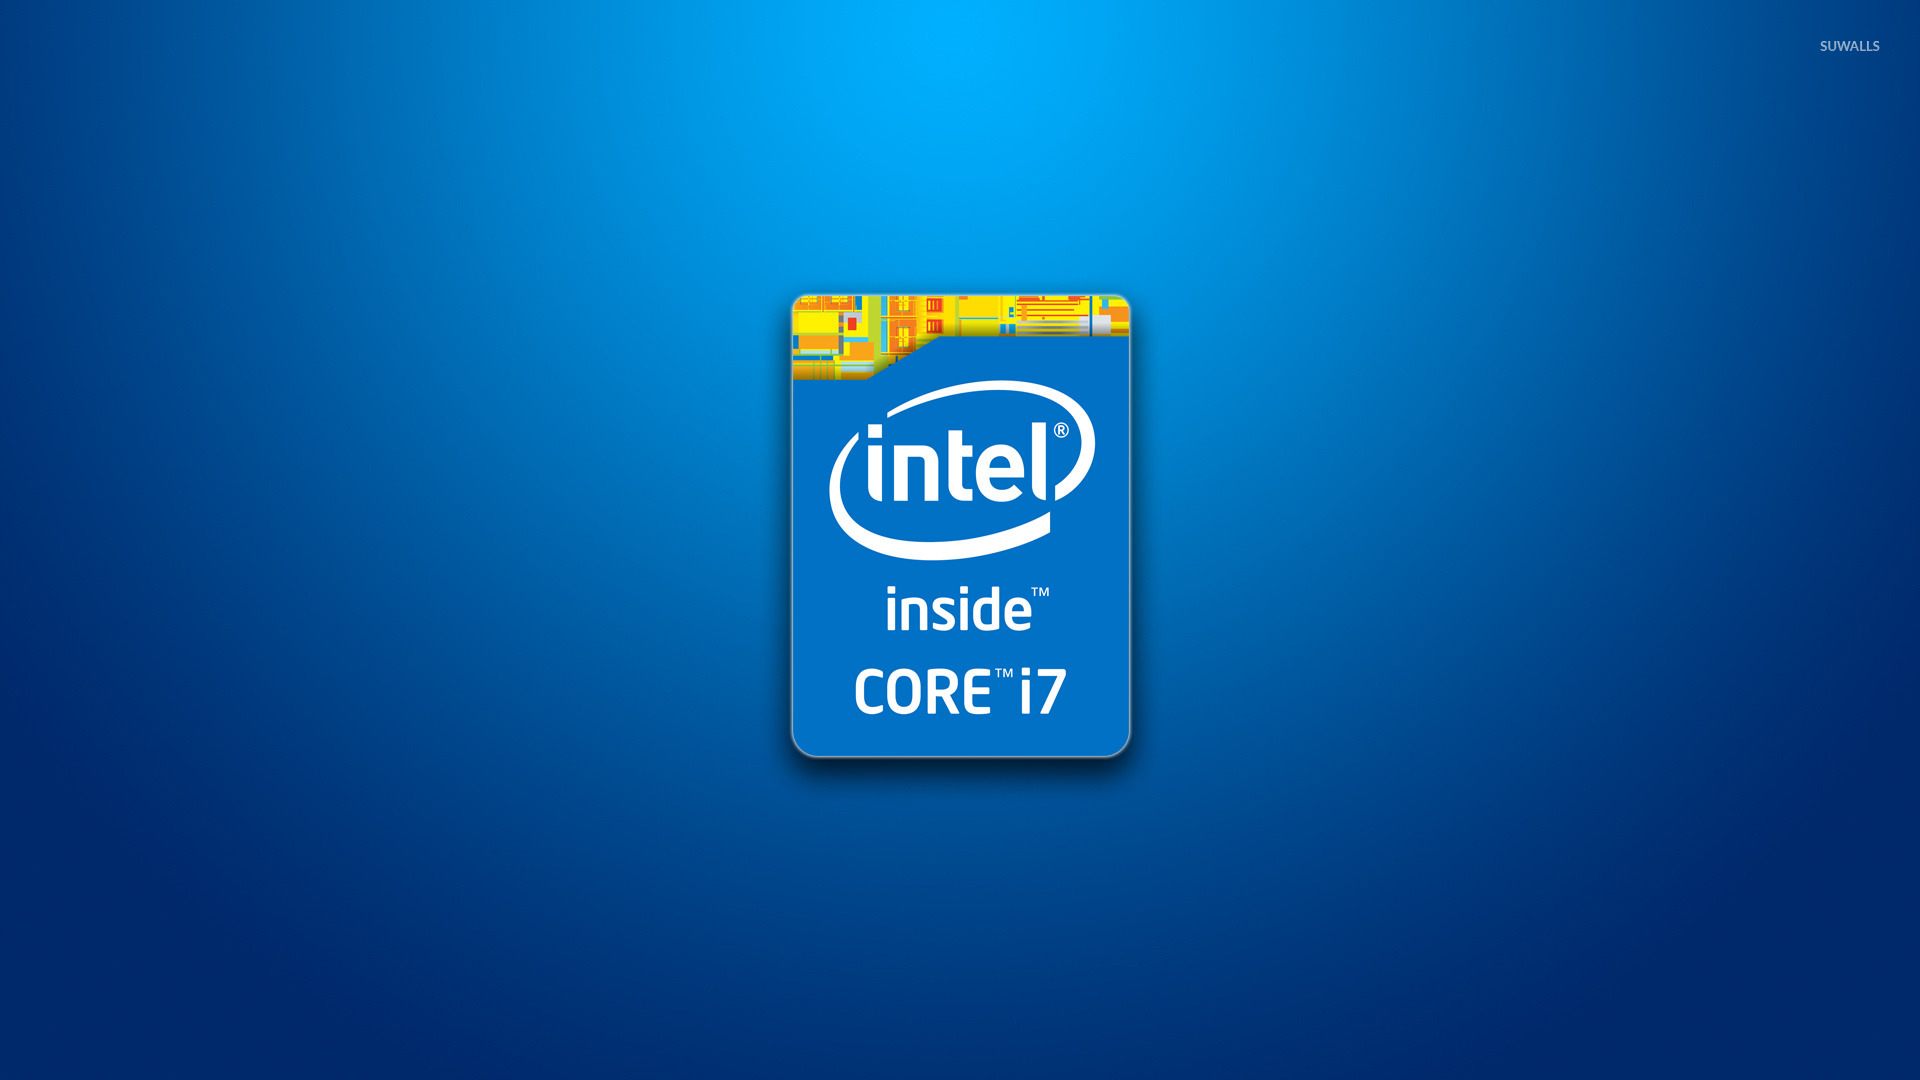 Intel Core i7 wallpaper   Computer wallpapers   42637